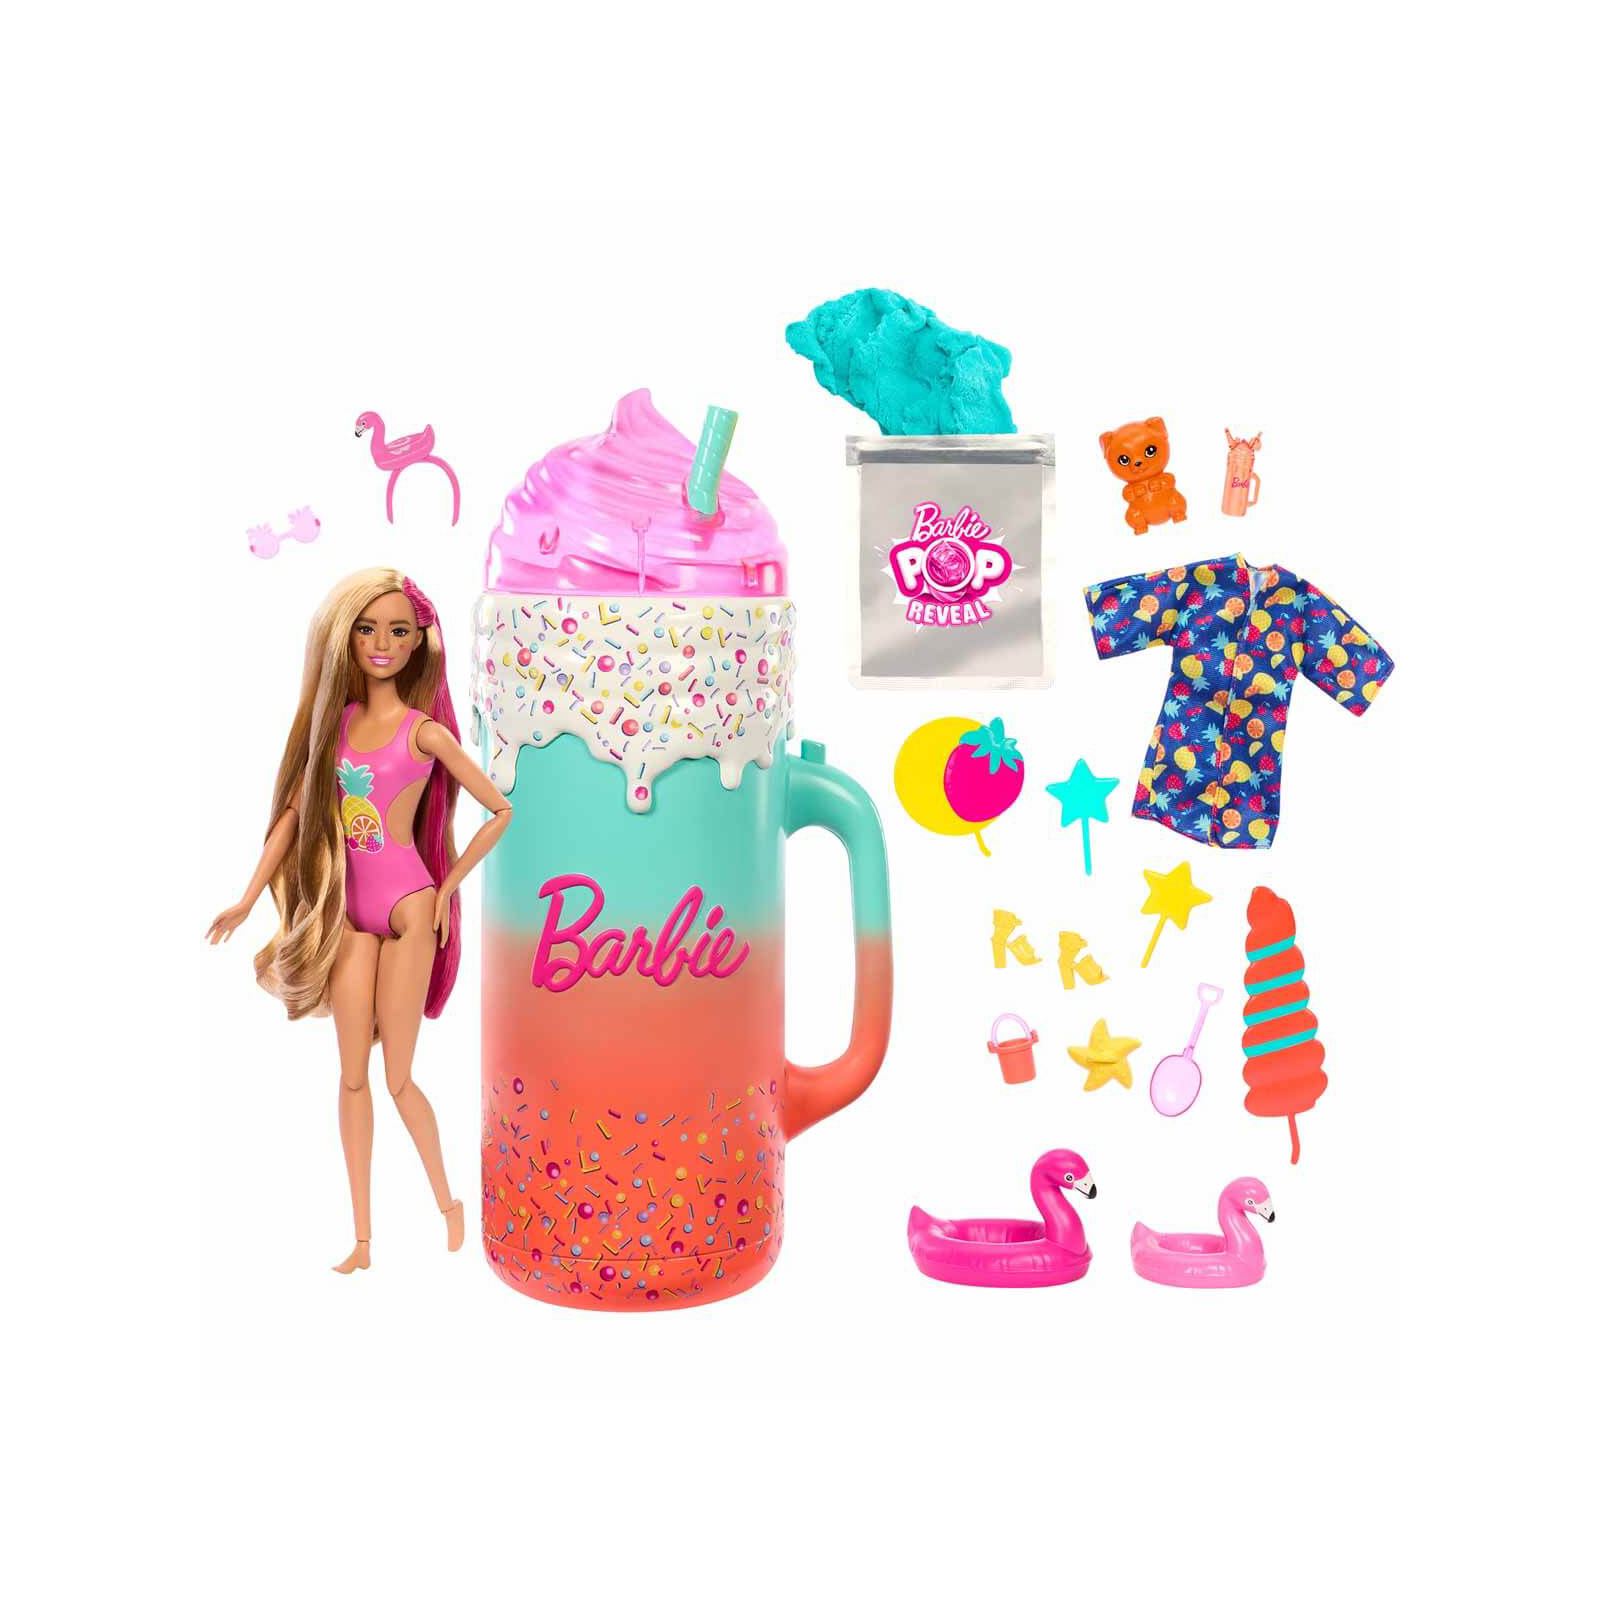 Barbie Pop Reveal Sürprizli Bardak Pembe